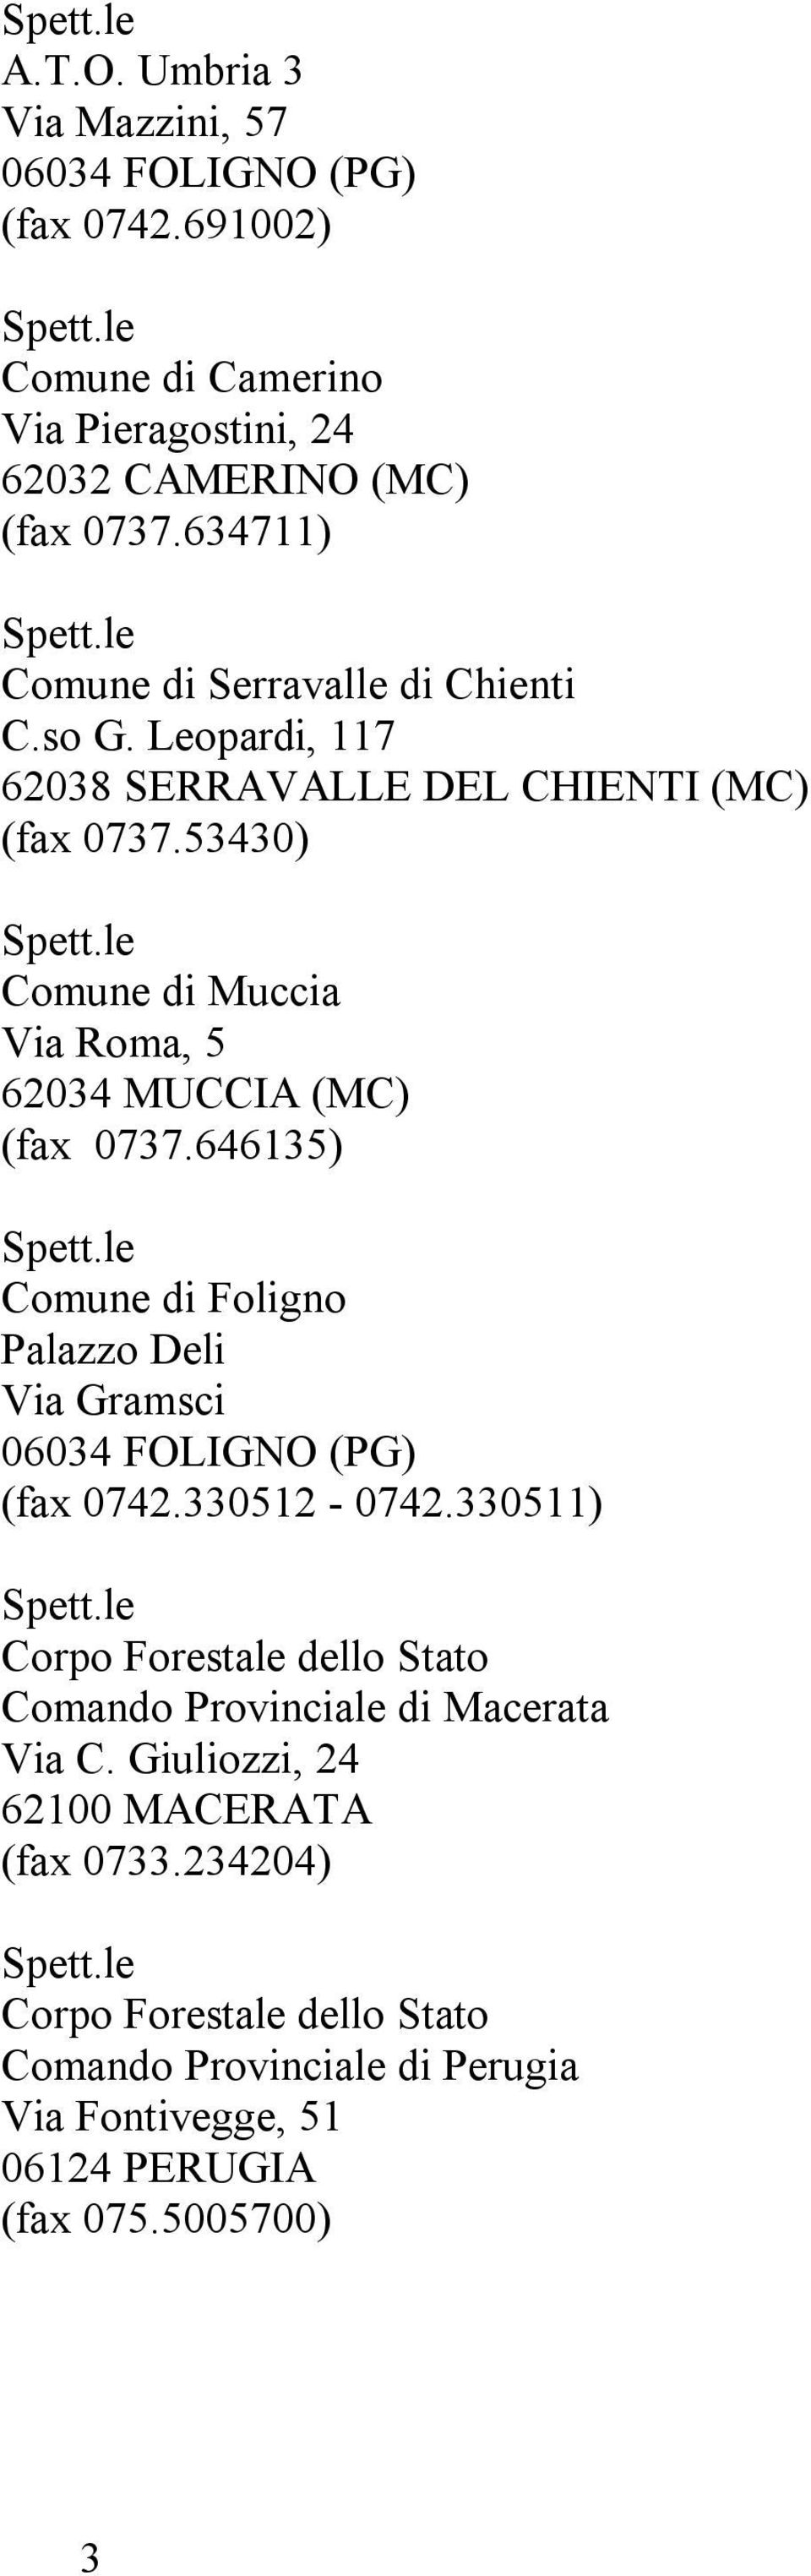 53430) Comune di Muccia Via Roma, 5 62034 MUCCIA (MC) (fax 0737.646135) Comune di Foligno Palazzo Deli Via Gramsci (fax 0742.330512-0742.